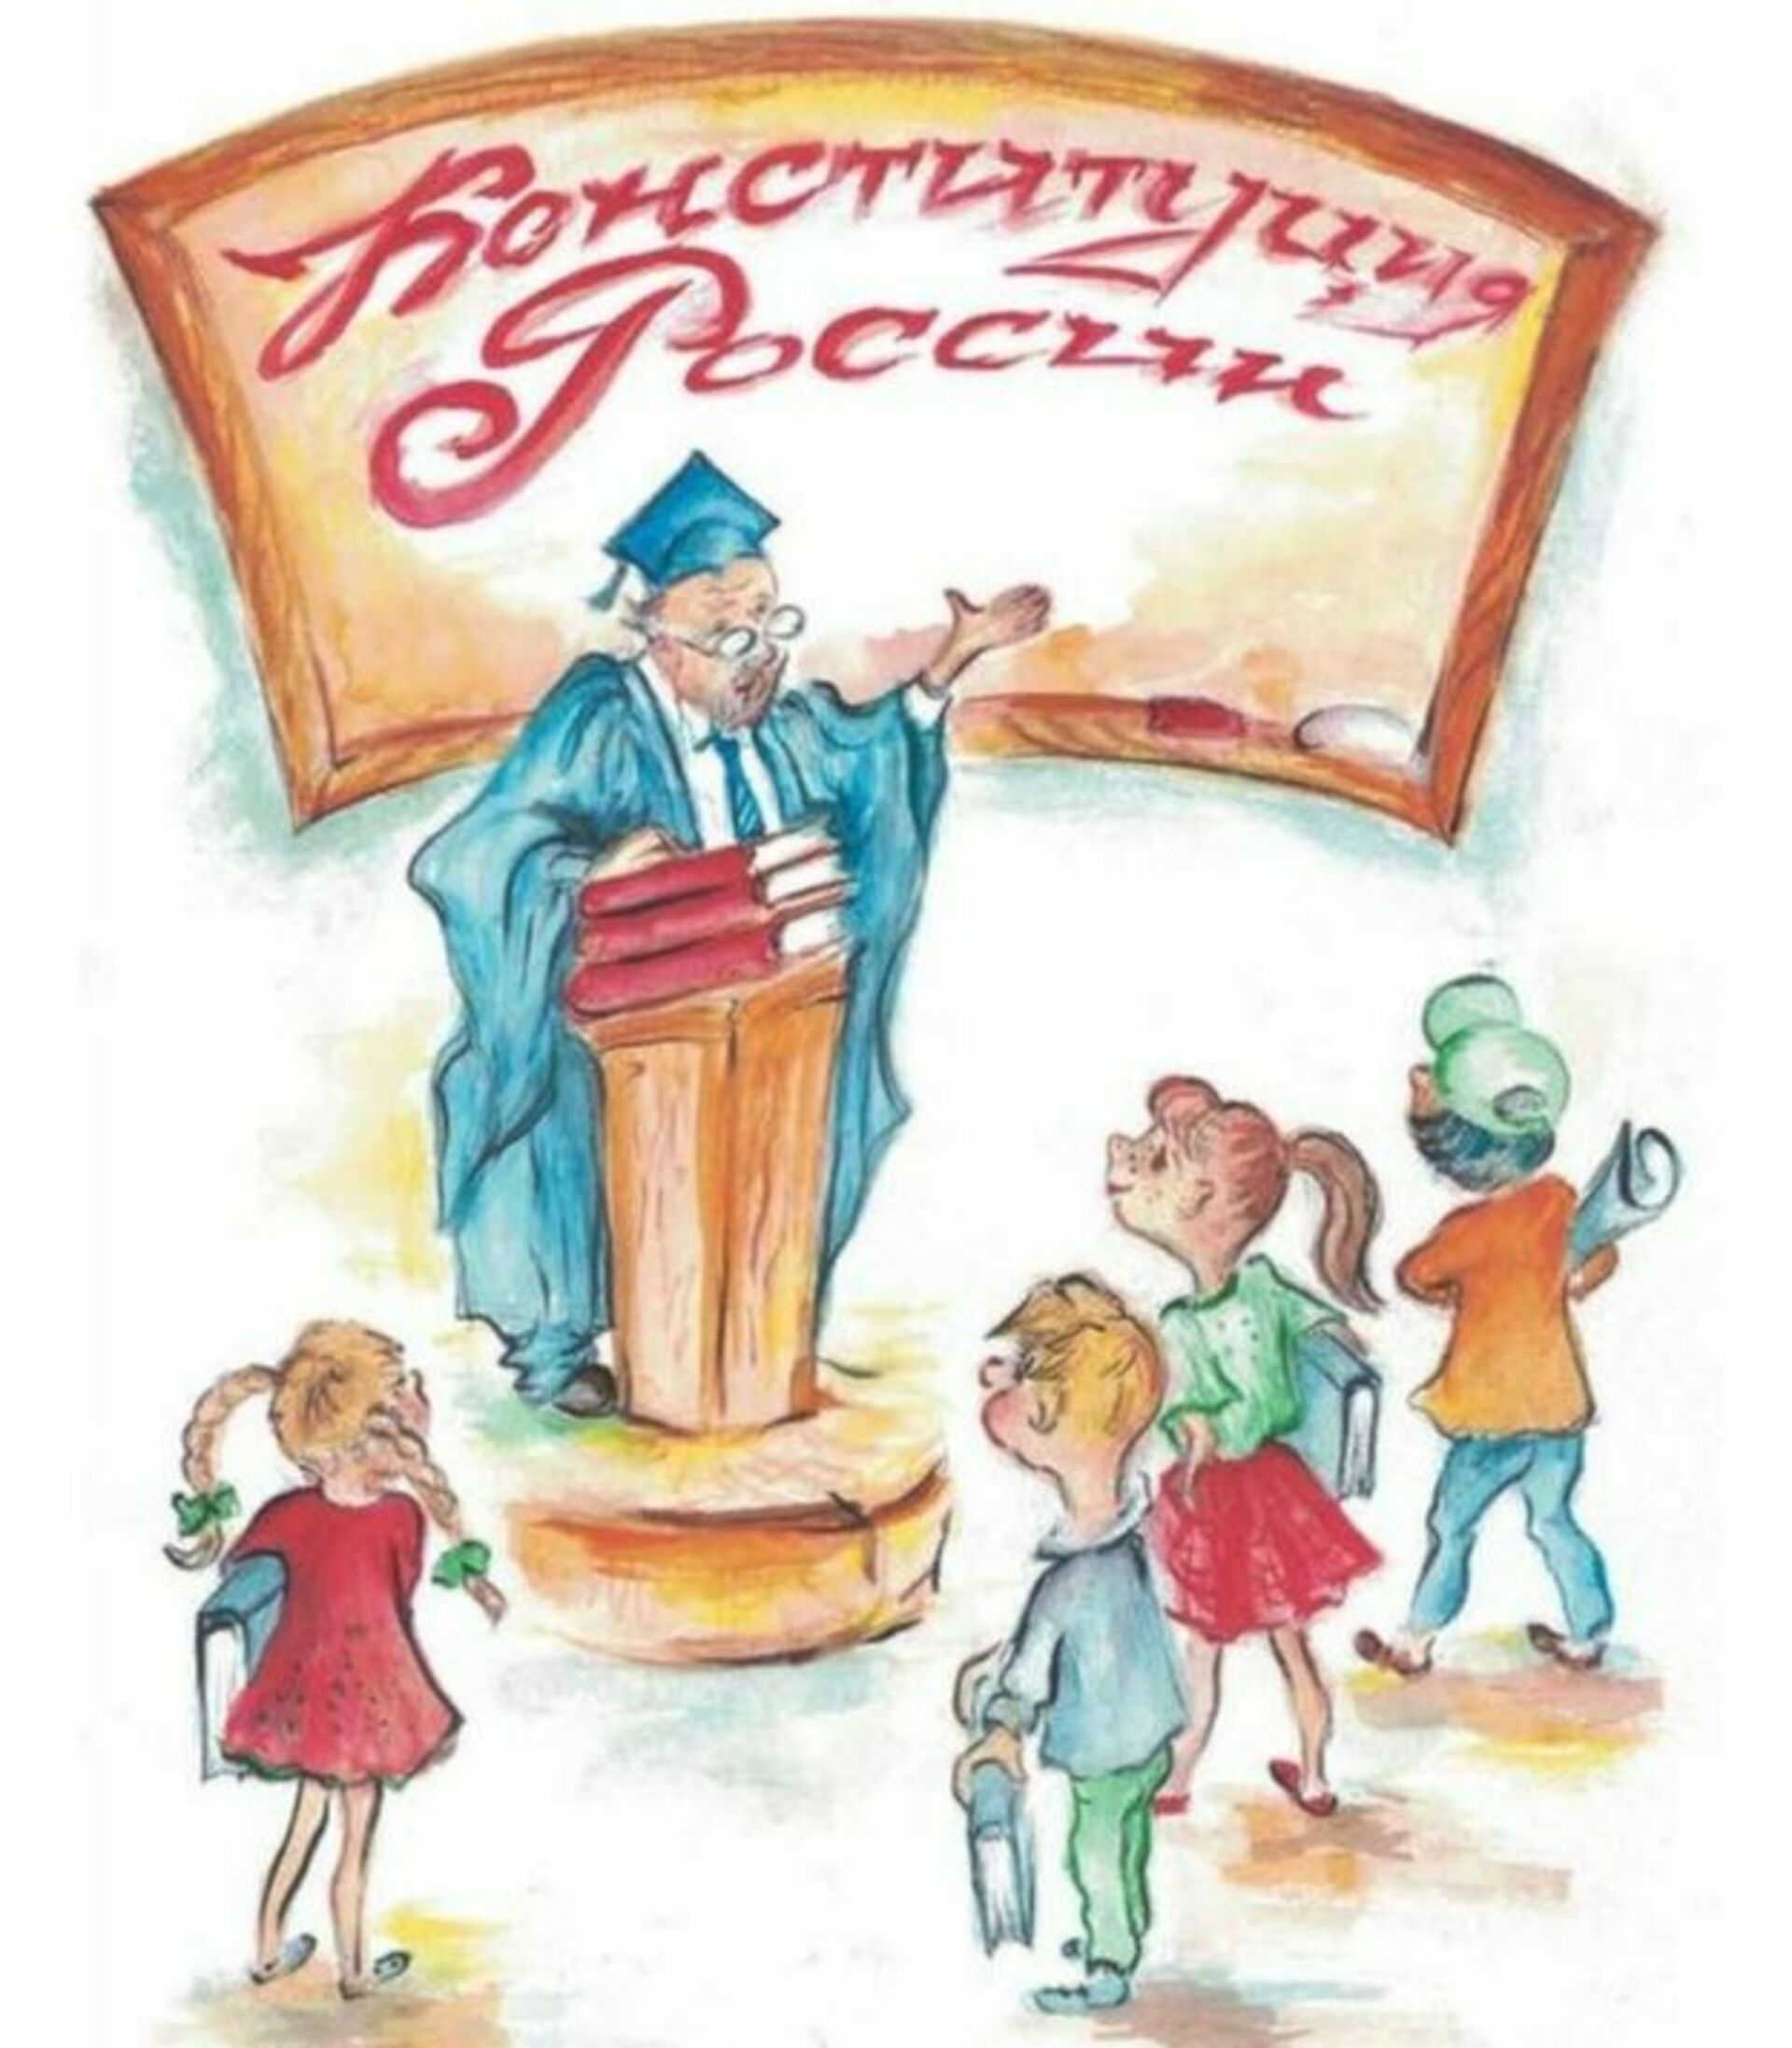 Конституция РФ для детей